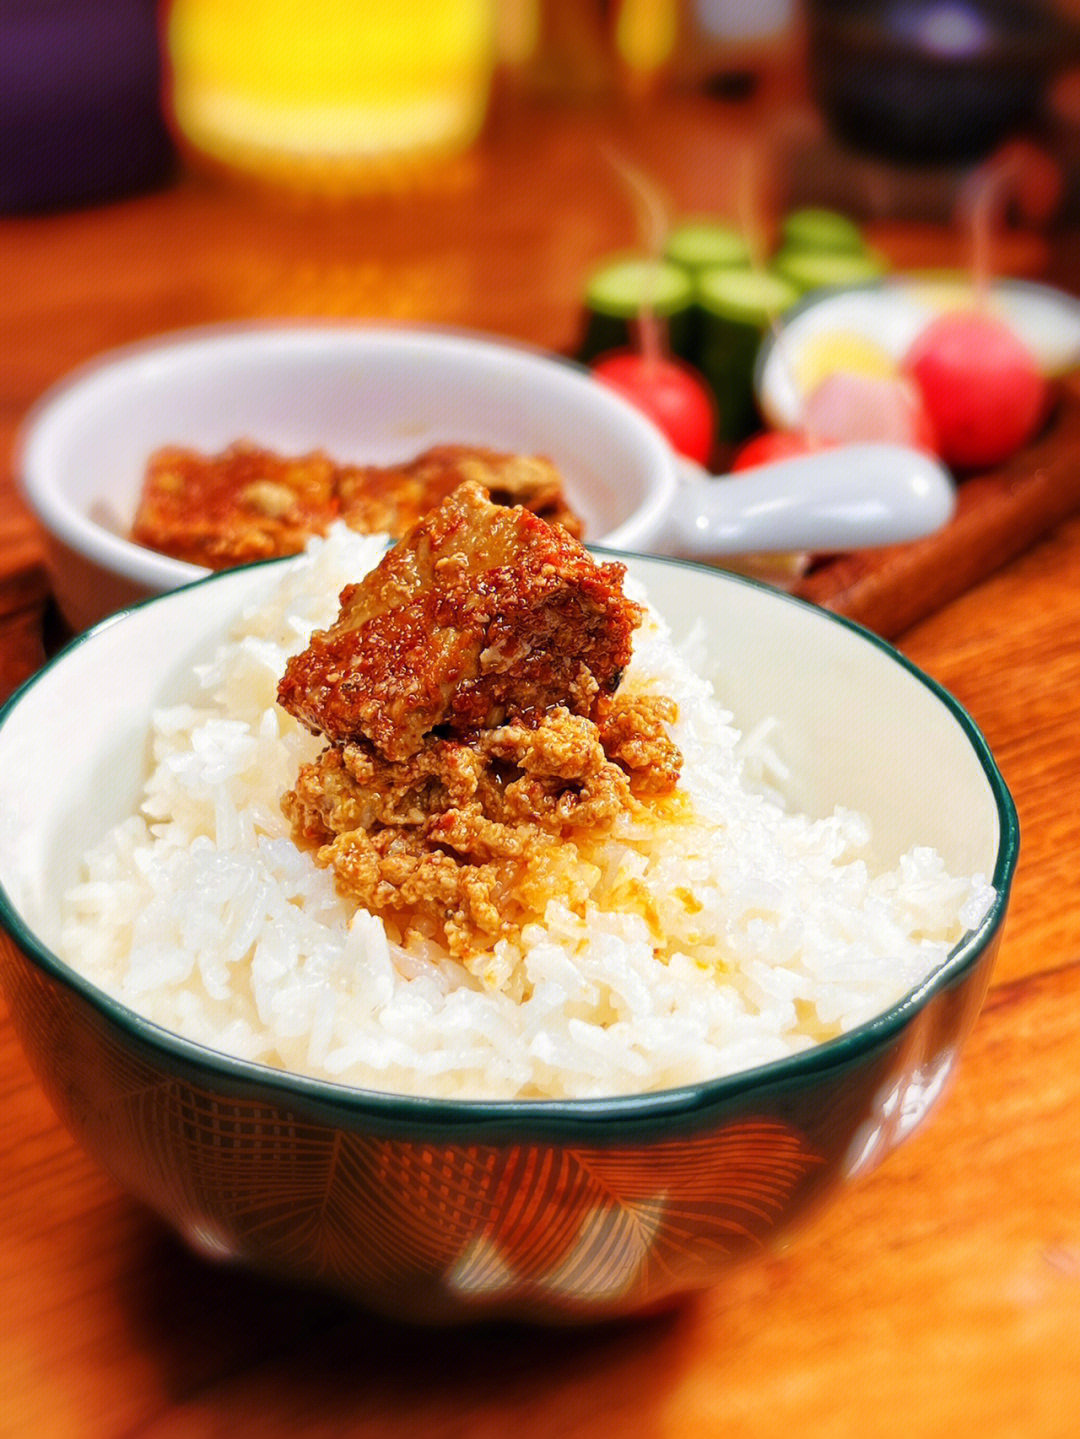 米饭加腐乳简简单单又是美美的一餐